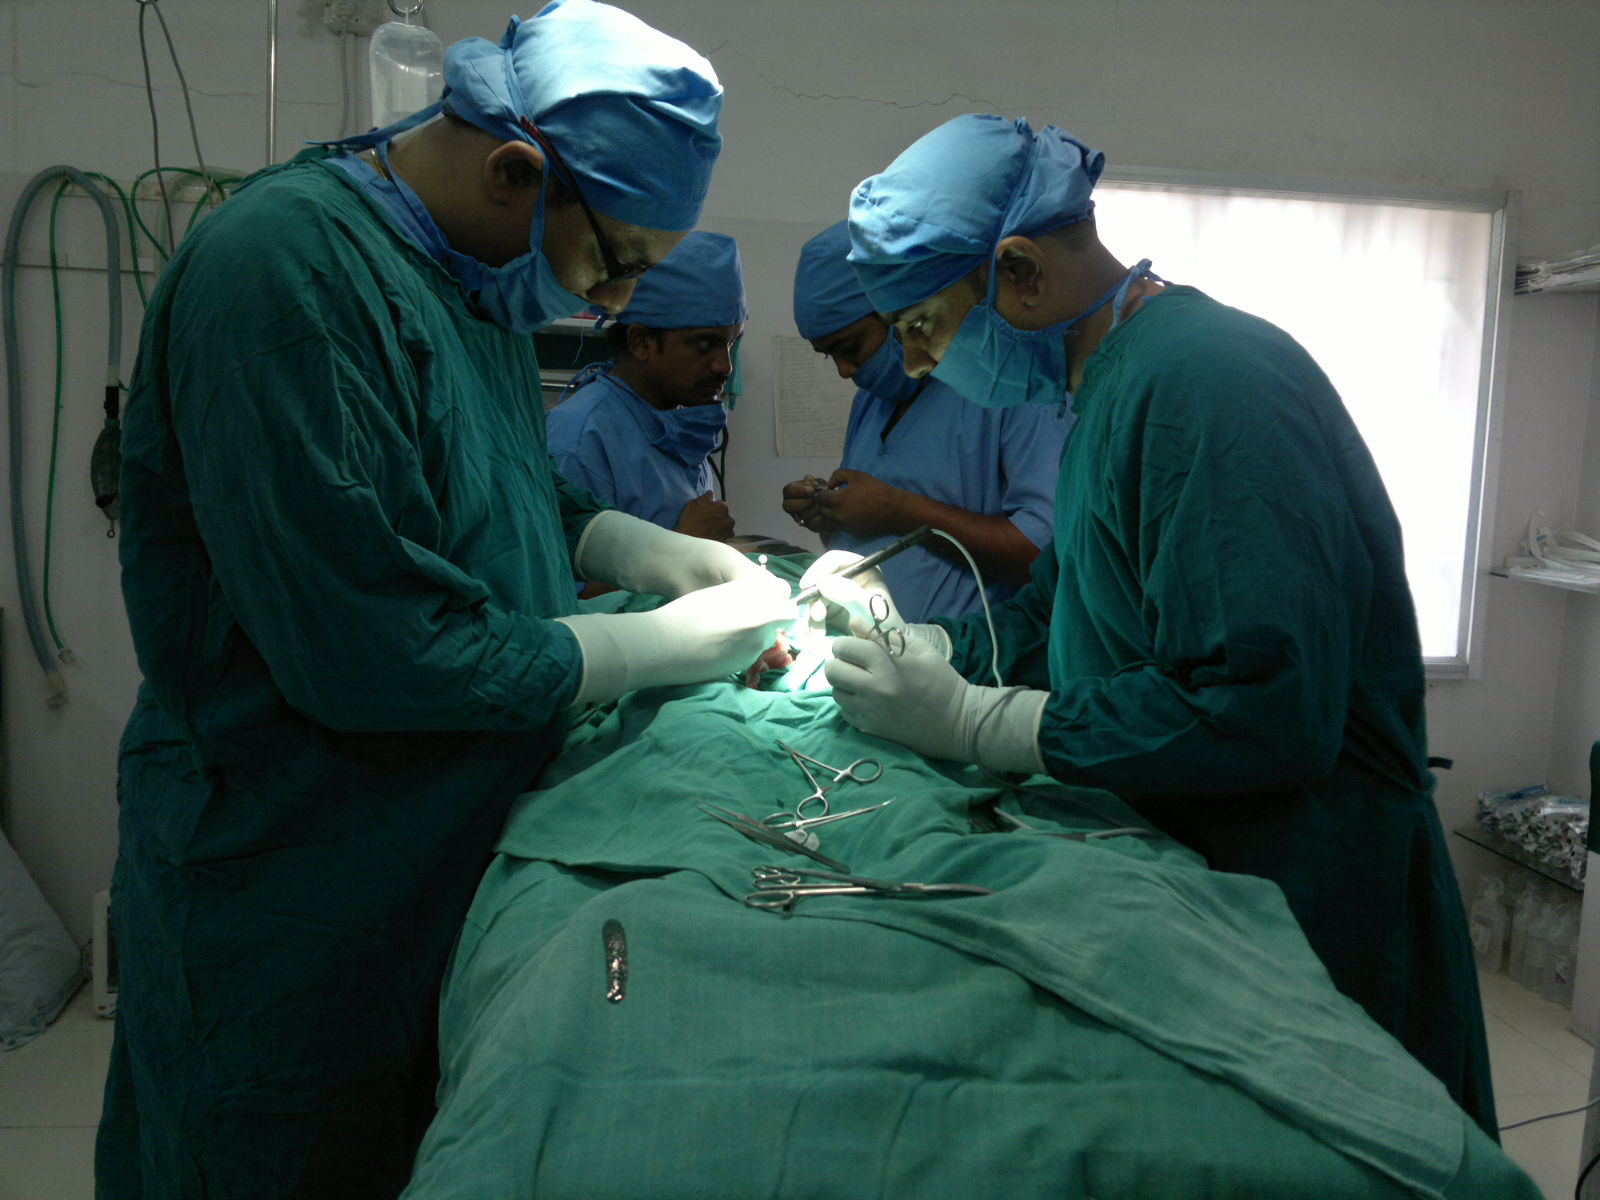 hypospadias repair procedure